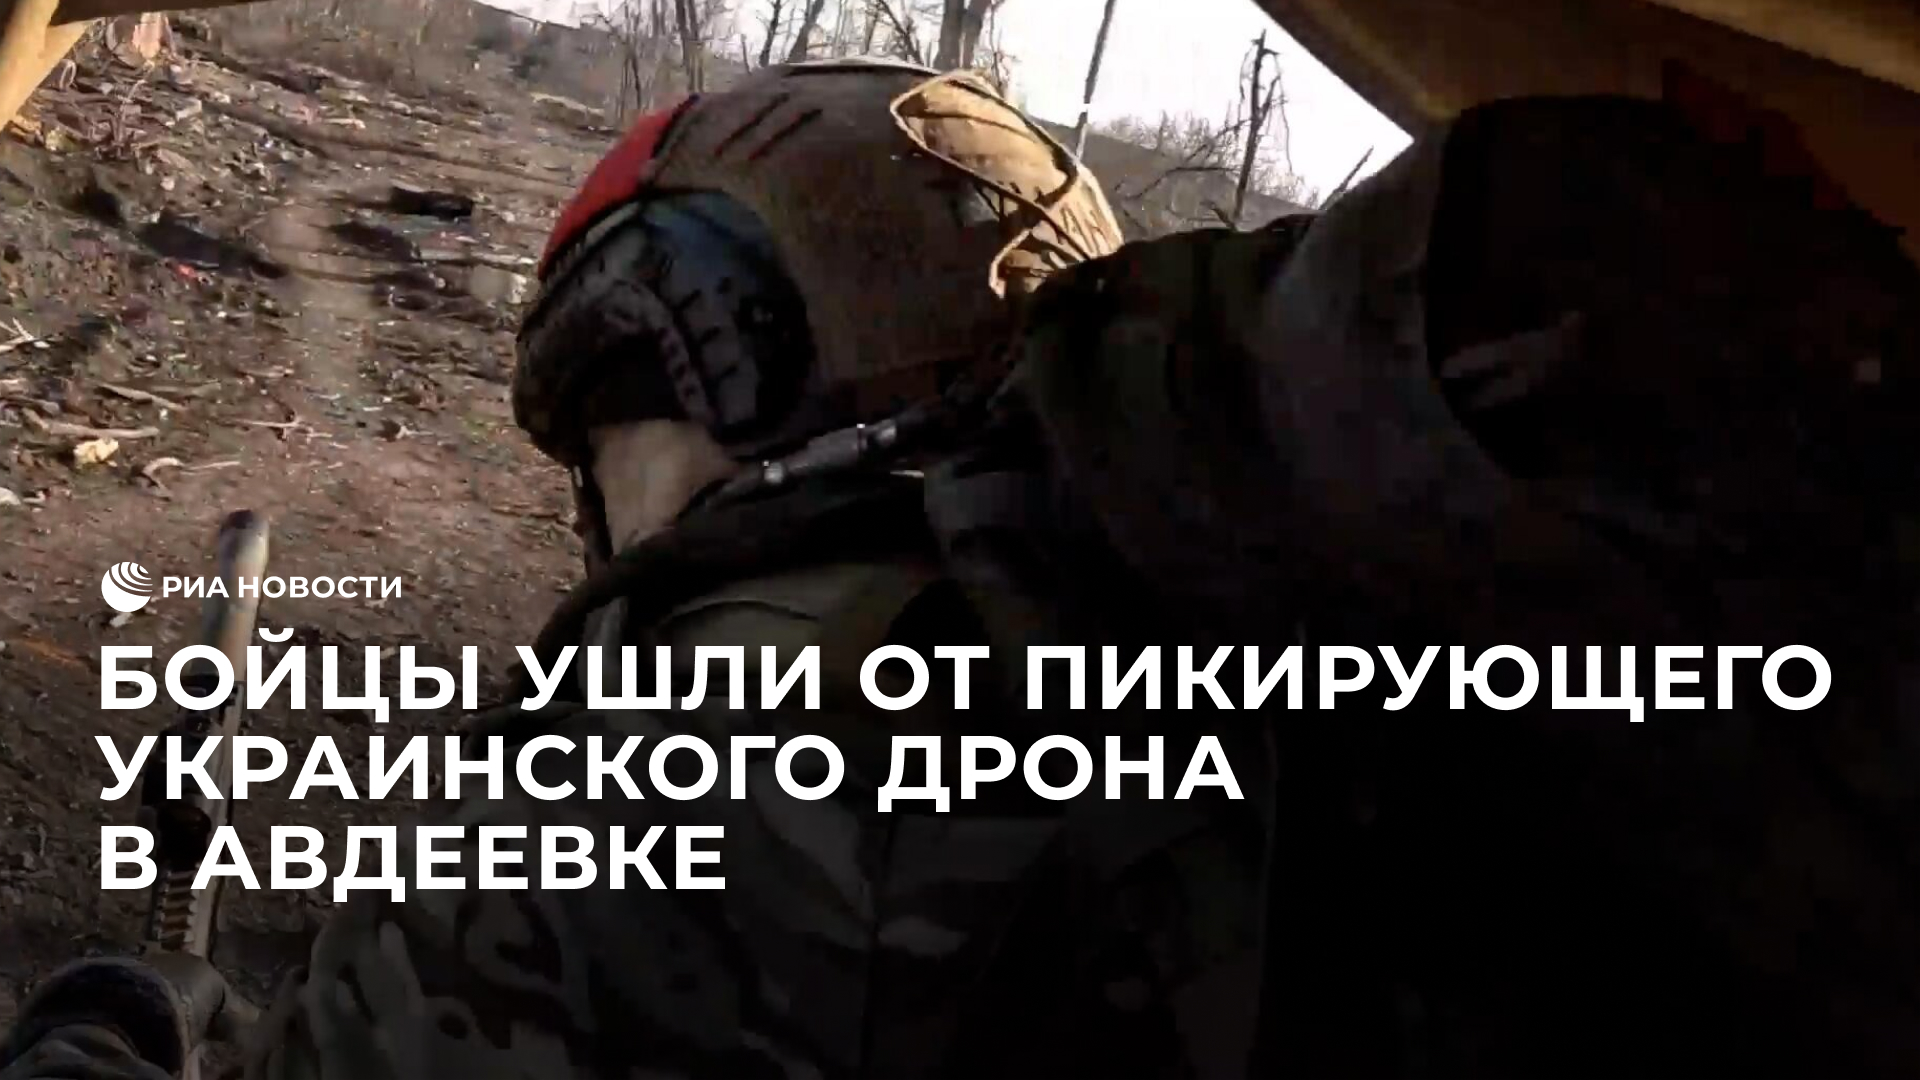 Бойцы ушли от пикирующего украинского дрона в Авдеевке